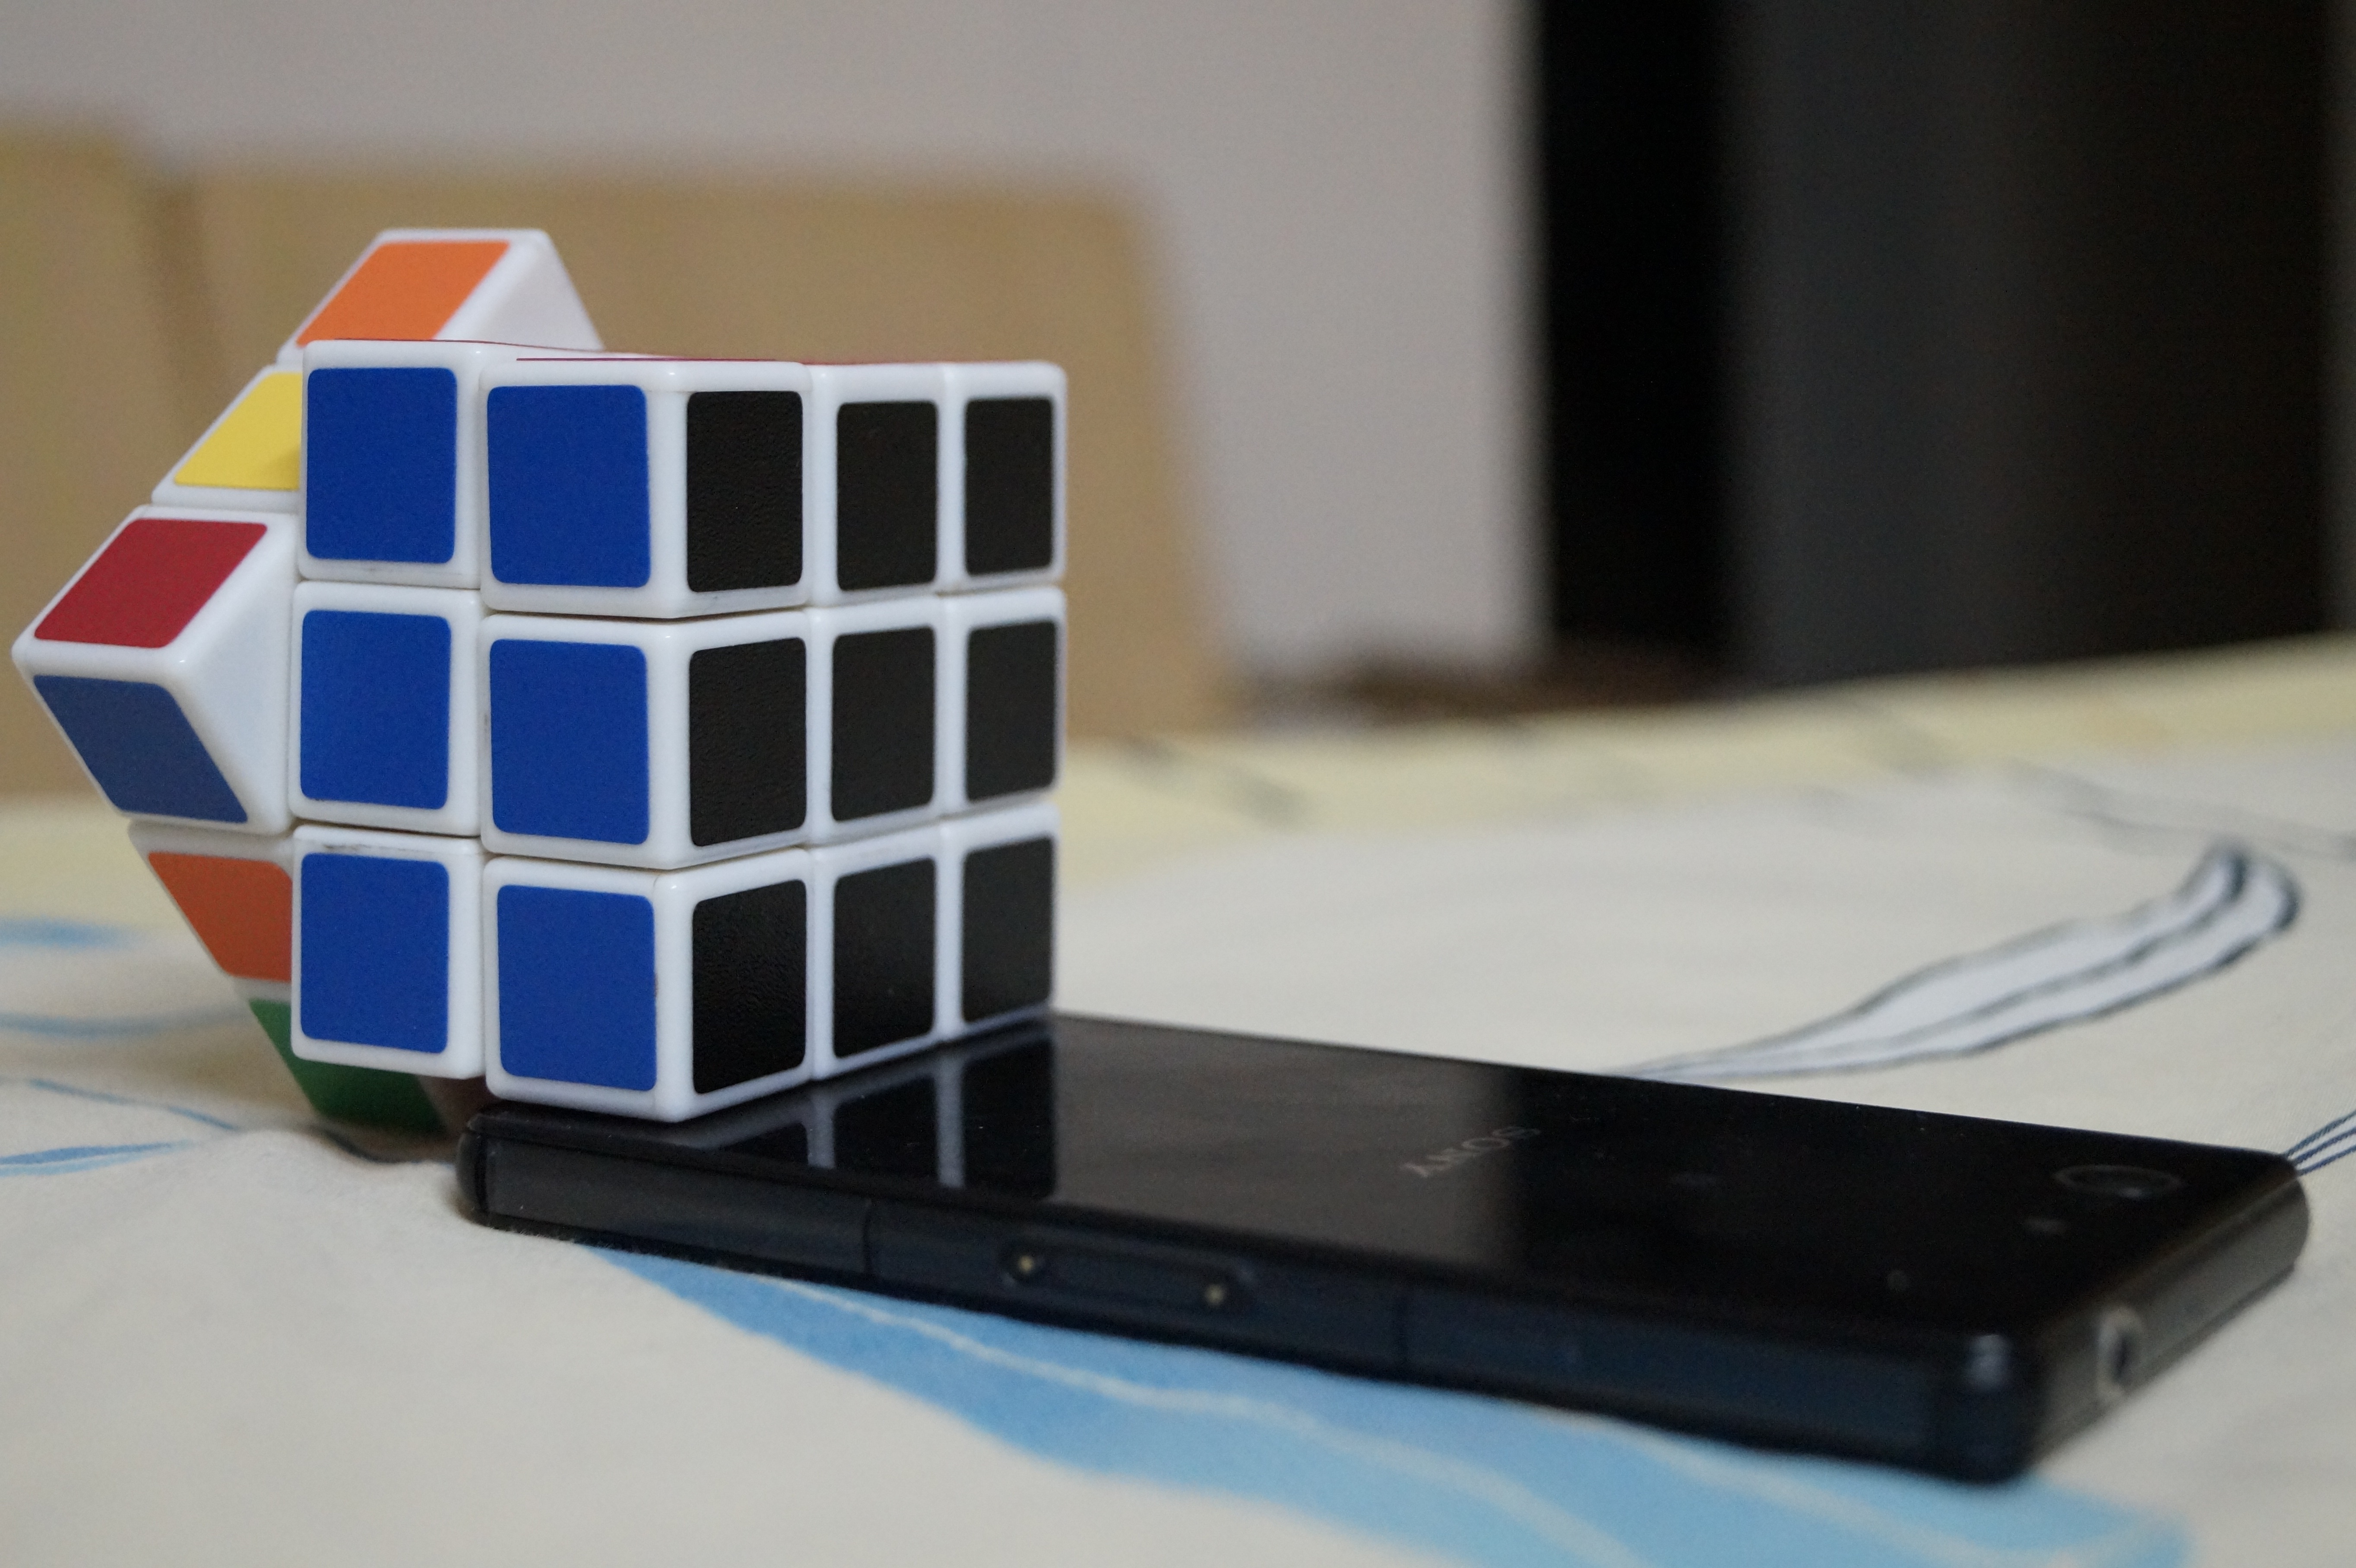 black smartphone and rubik's cube